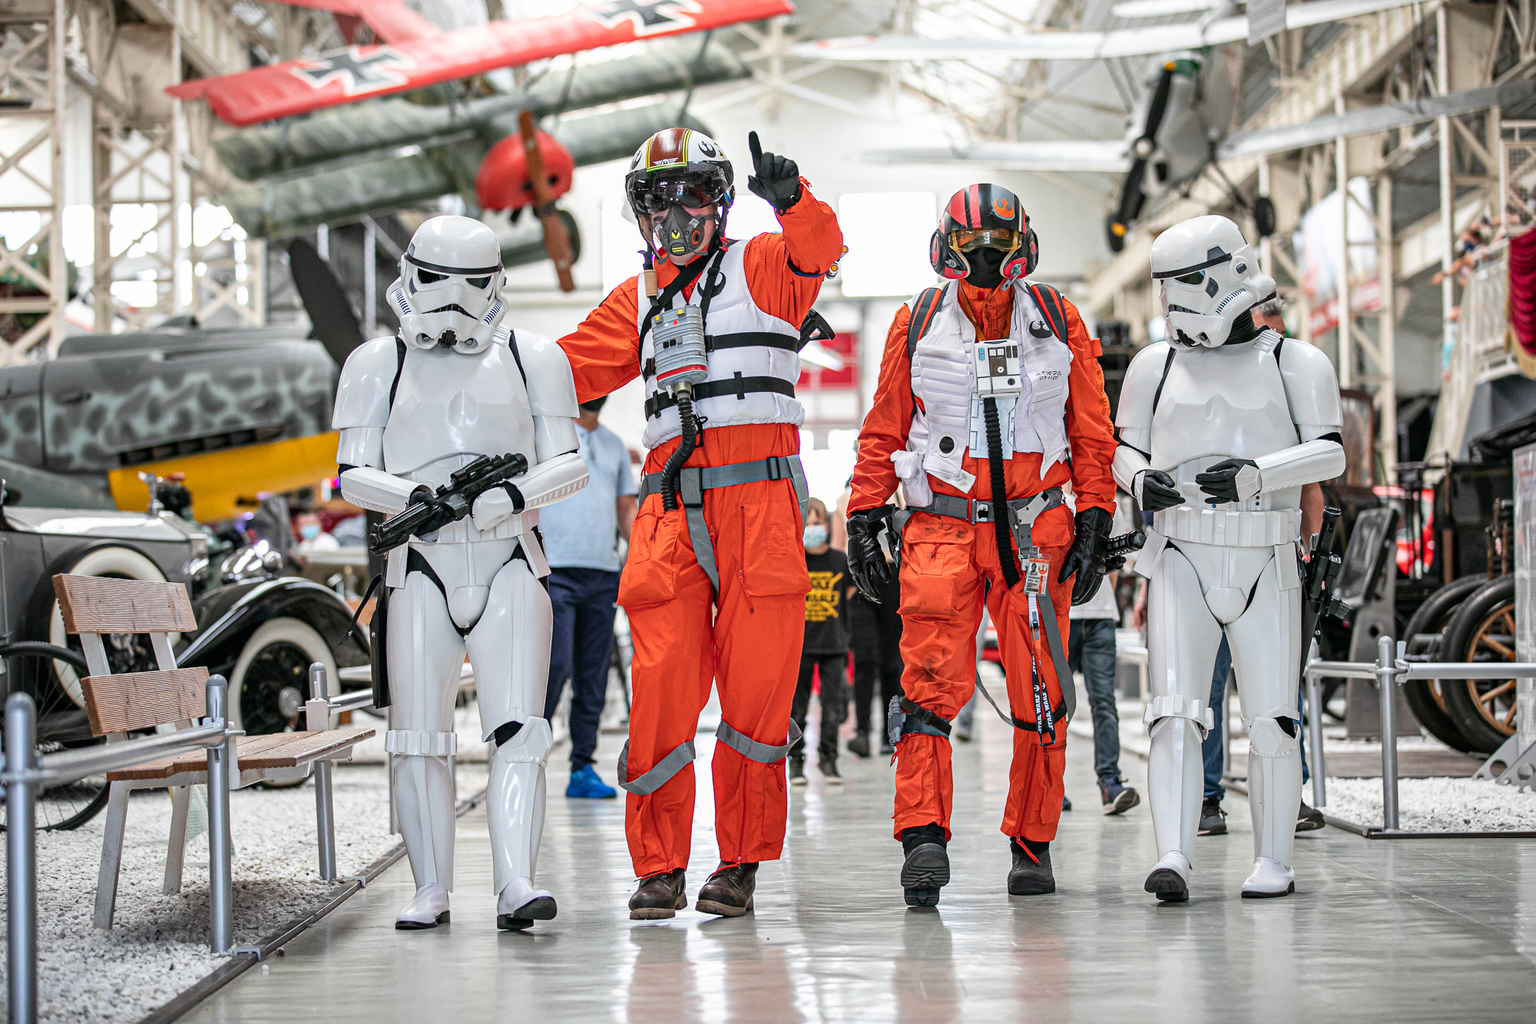 Science Fiction Treffen im Technik Museum Speyer: Stormtrooper, Transformers und Superhelden